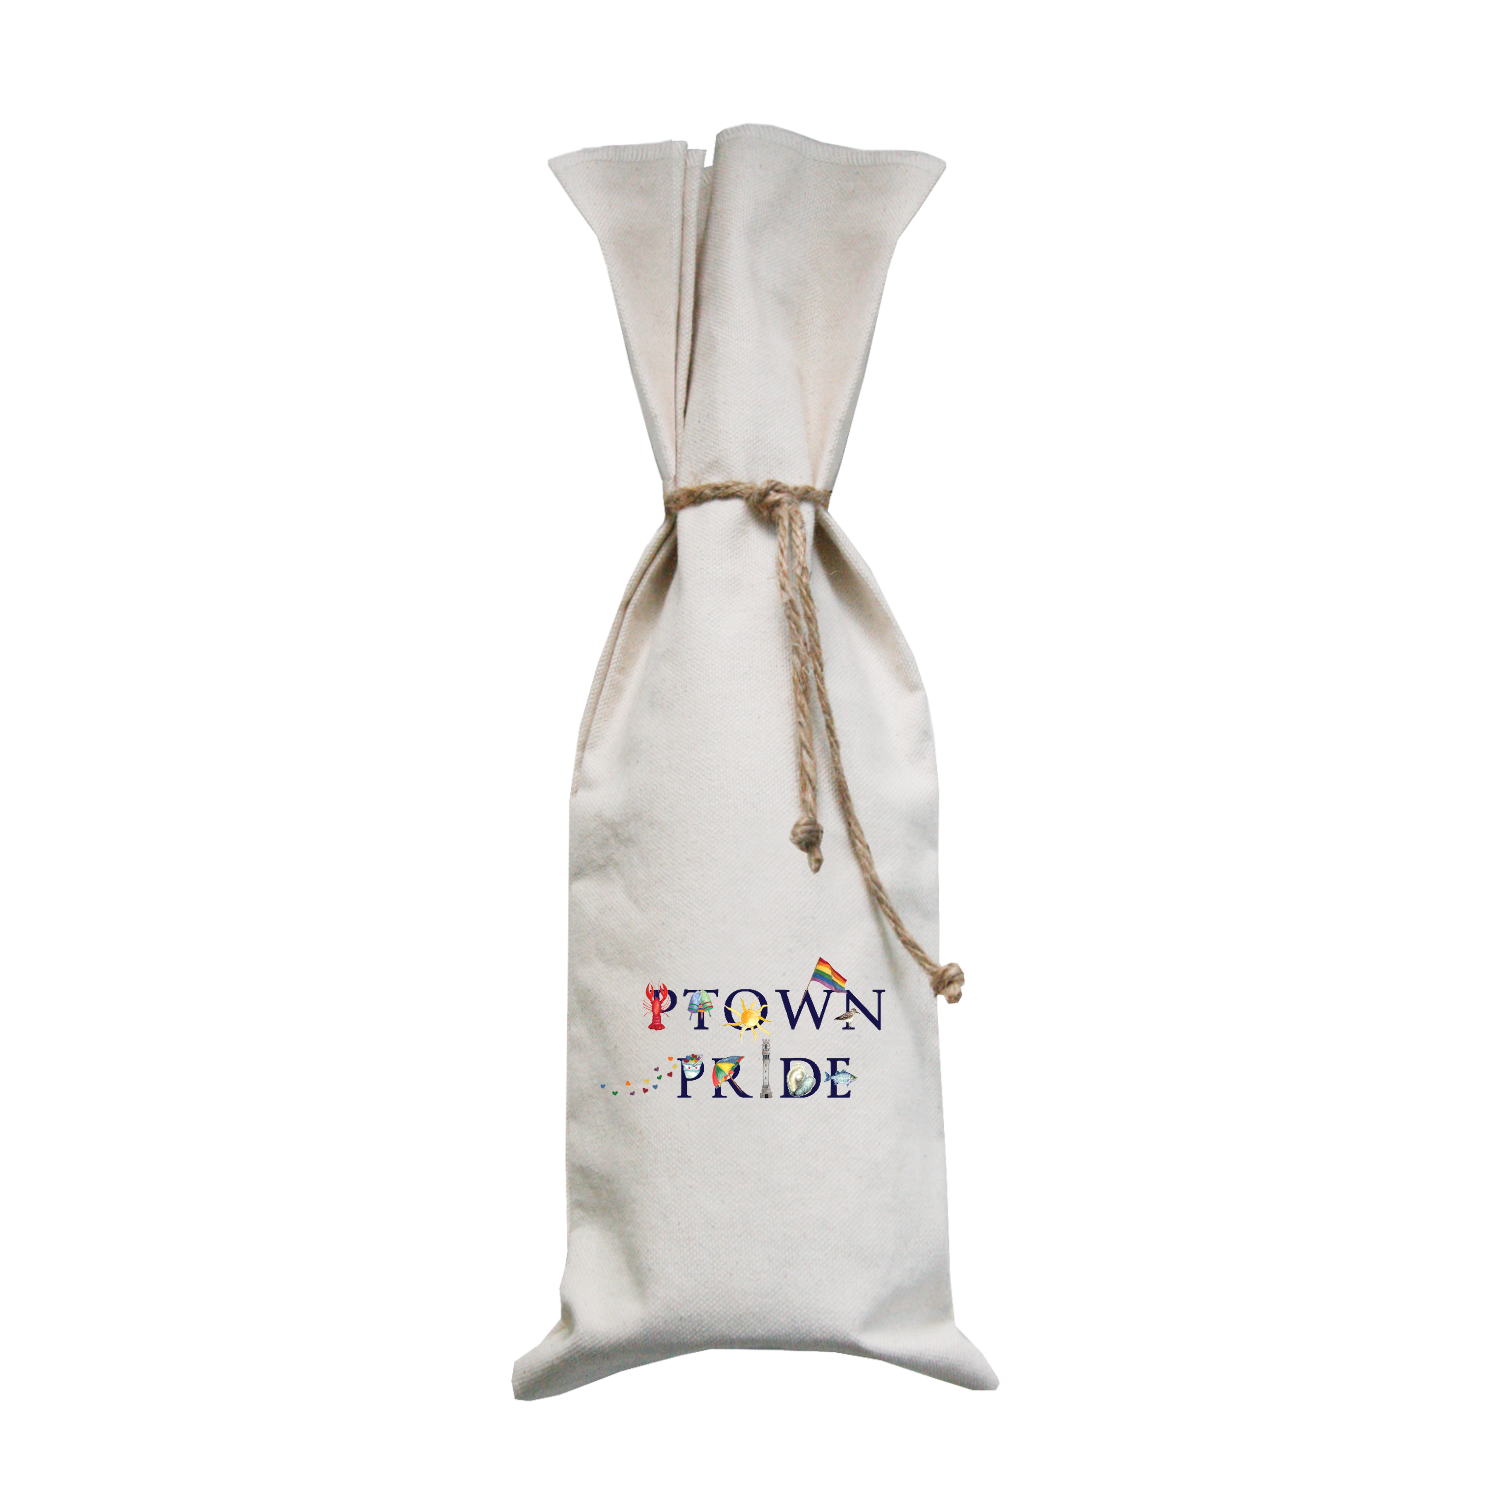 ptown pride wine bag